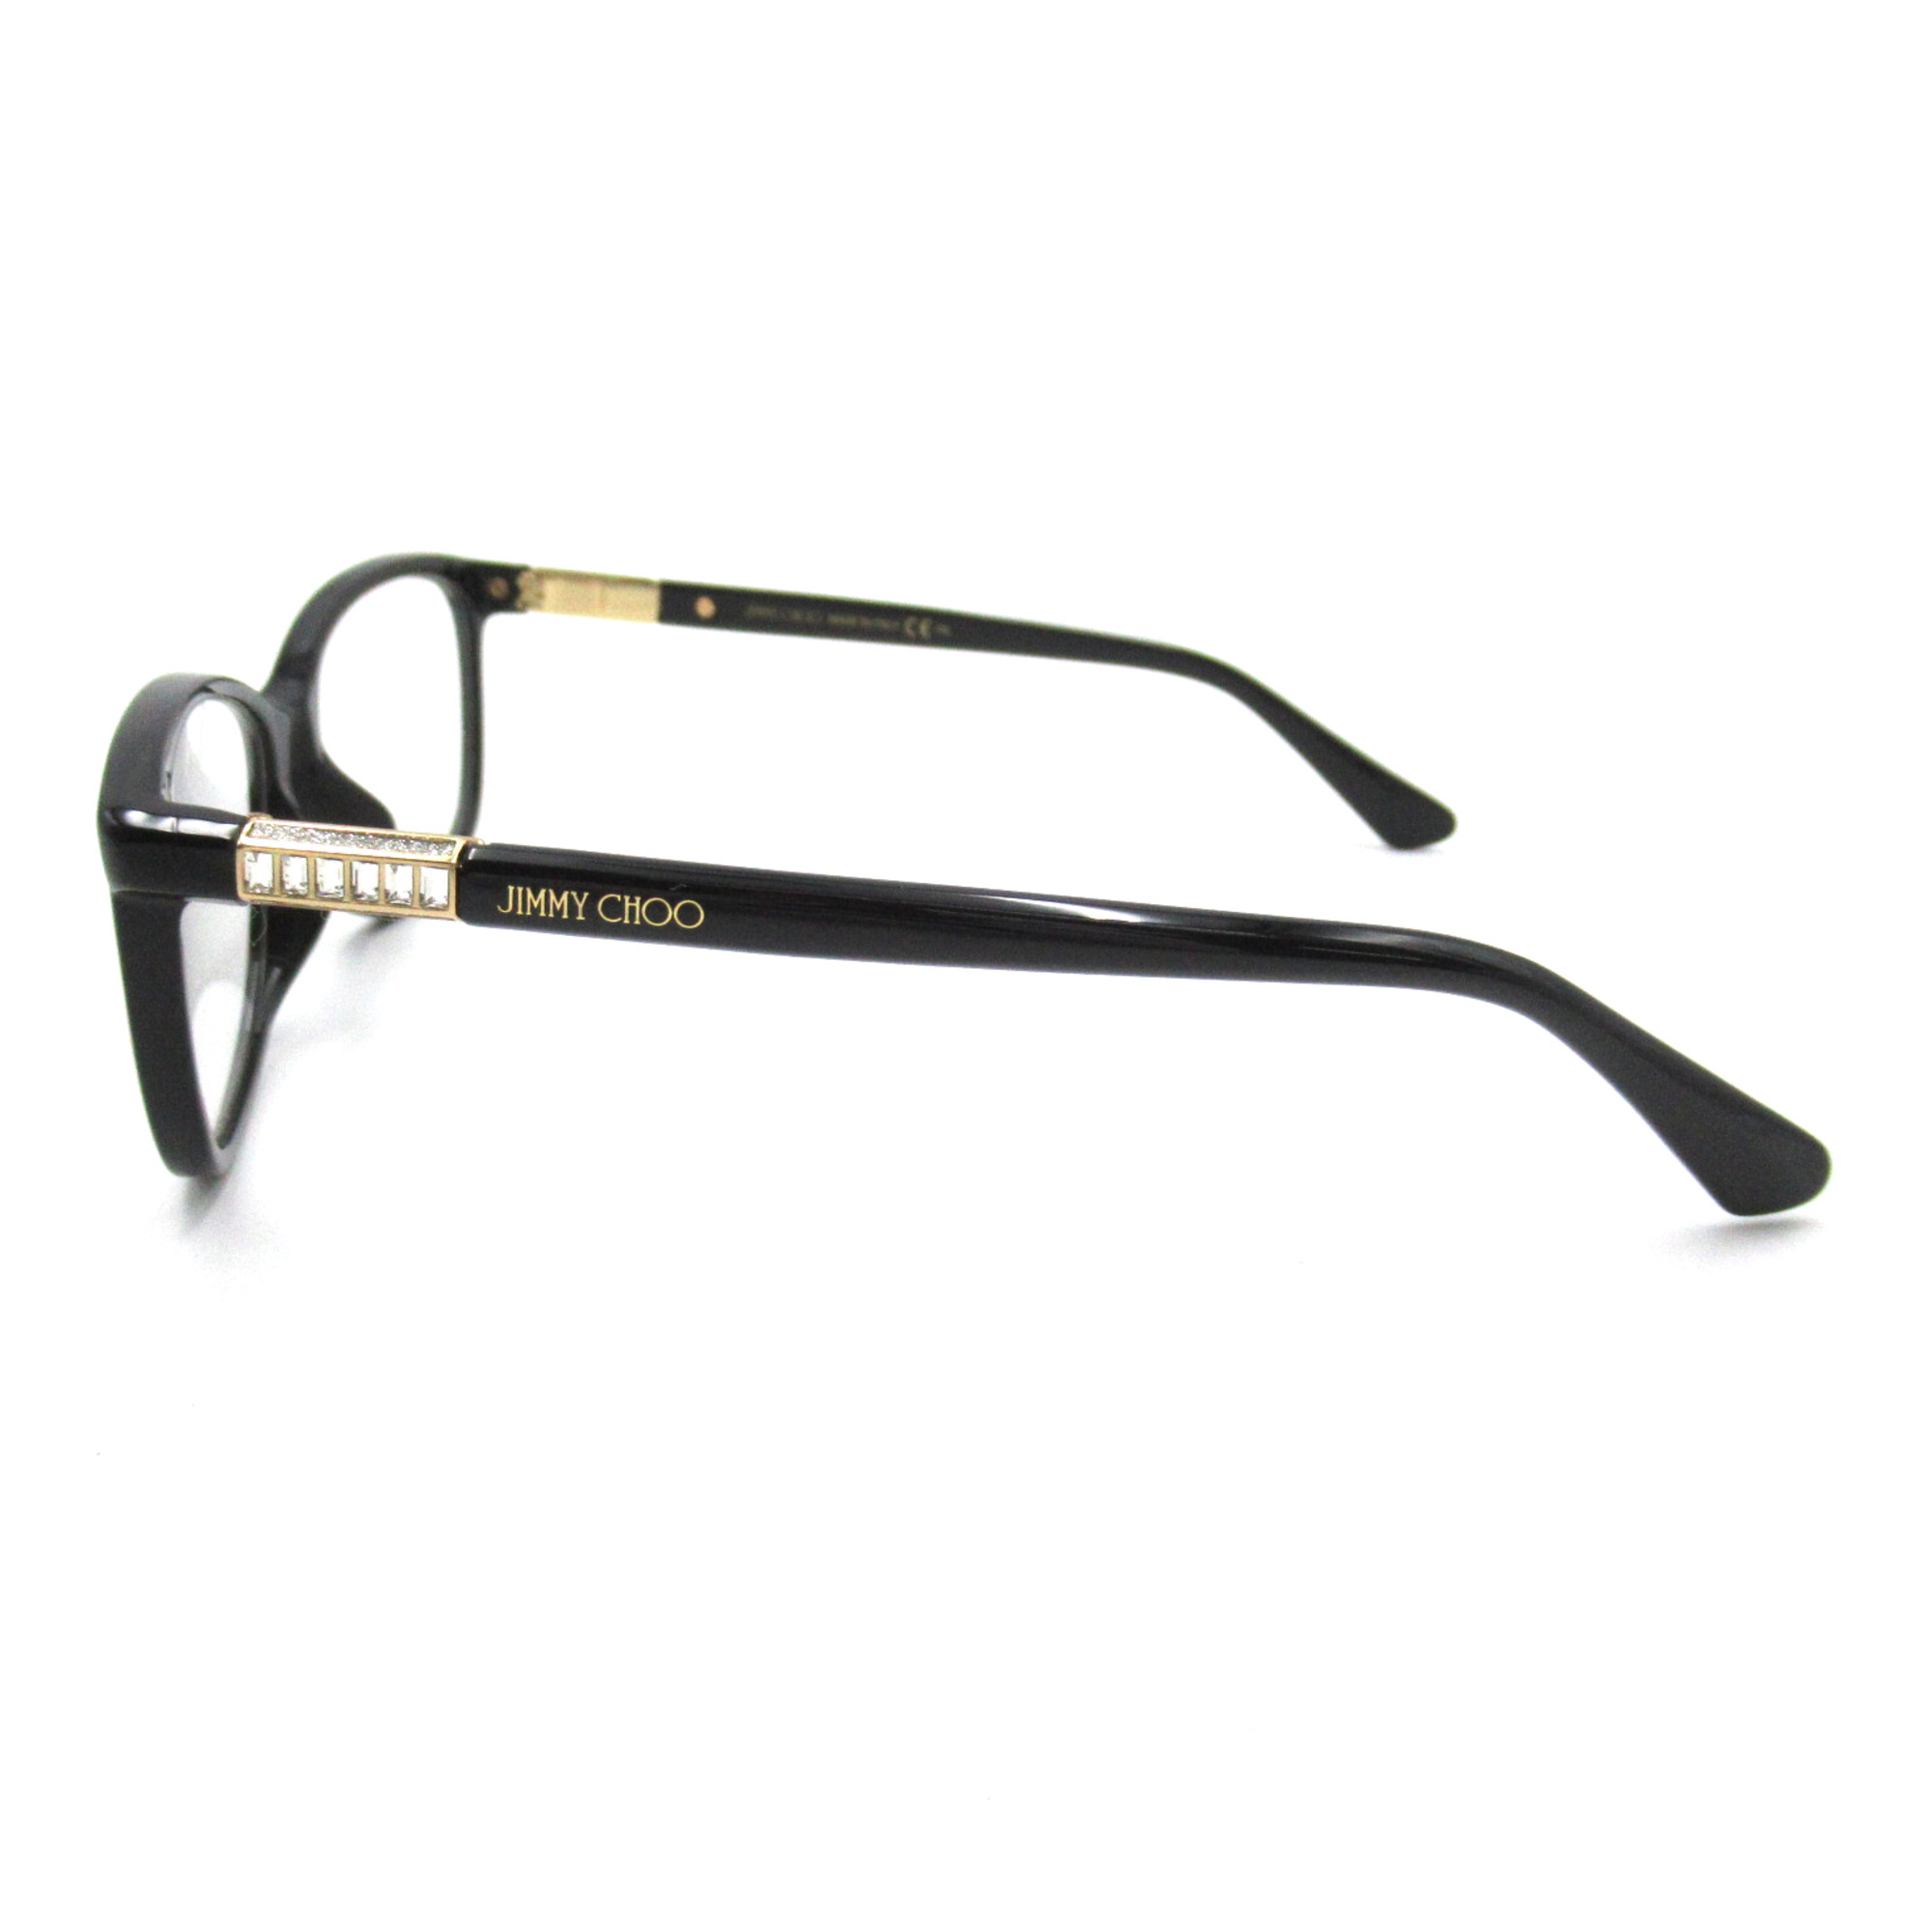 JIMMY CHOO Date Glasses Glasses Frame Black Plastic 280 P4G(49)